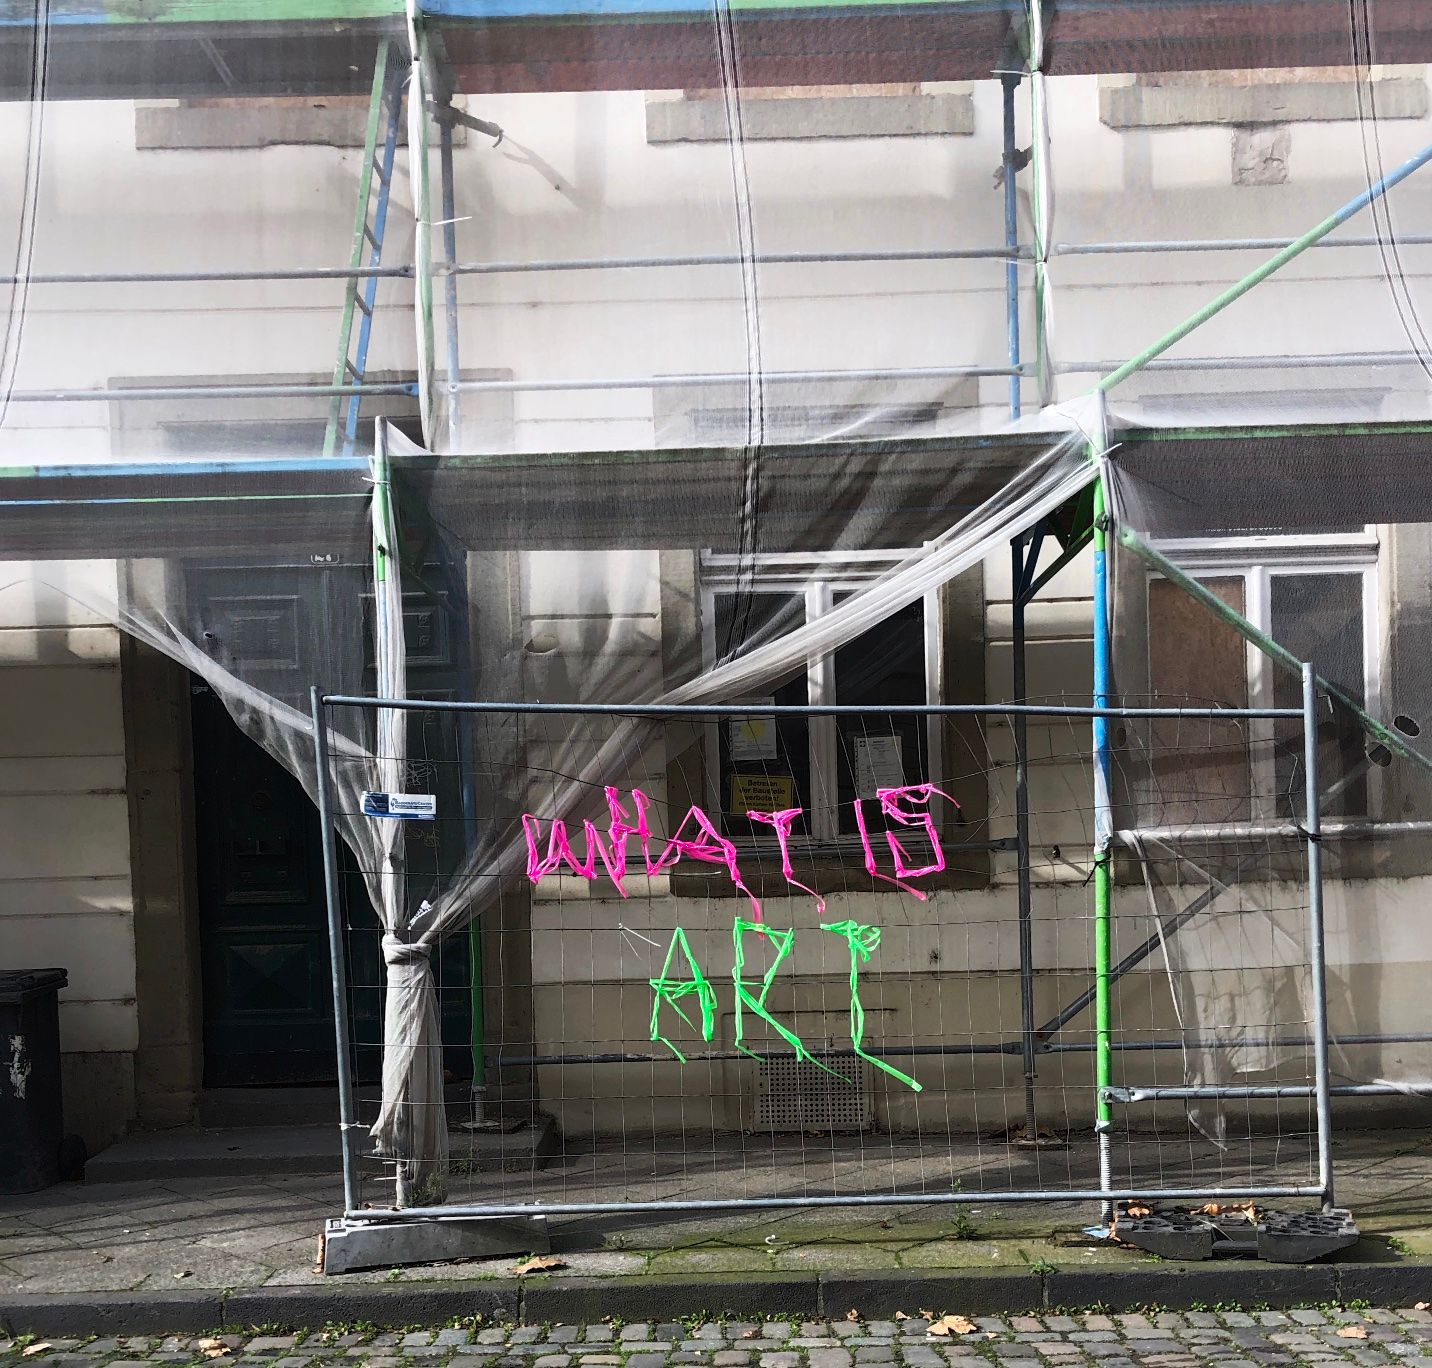 Bauzaun vor einer Hausfassade. Auf dem Zaun wurde mit buntem Band "What is Art" geschrieben.